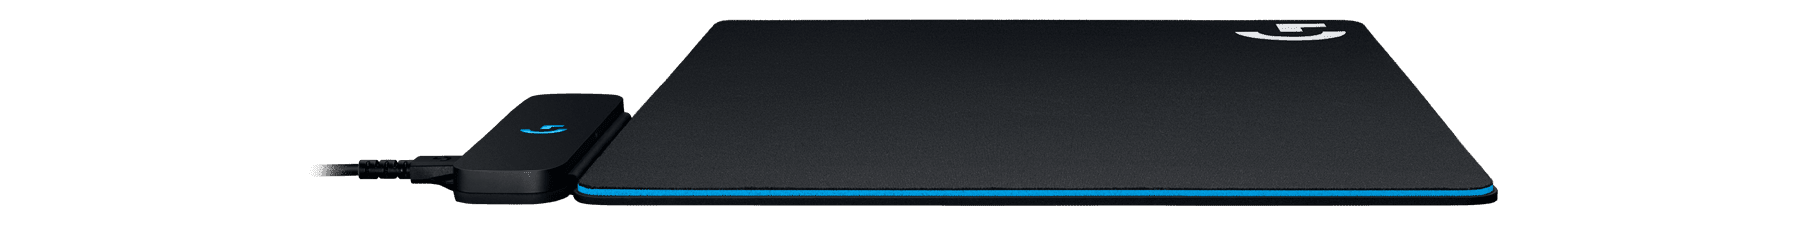 G703 LIGHTSPEED | Sạc không dây Powerplay